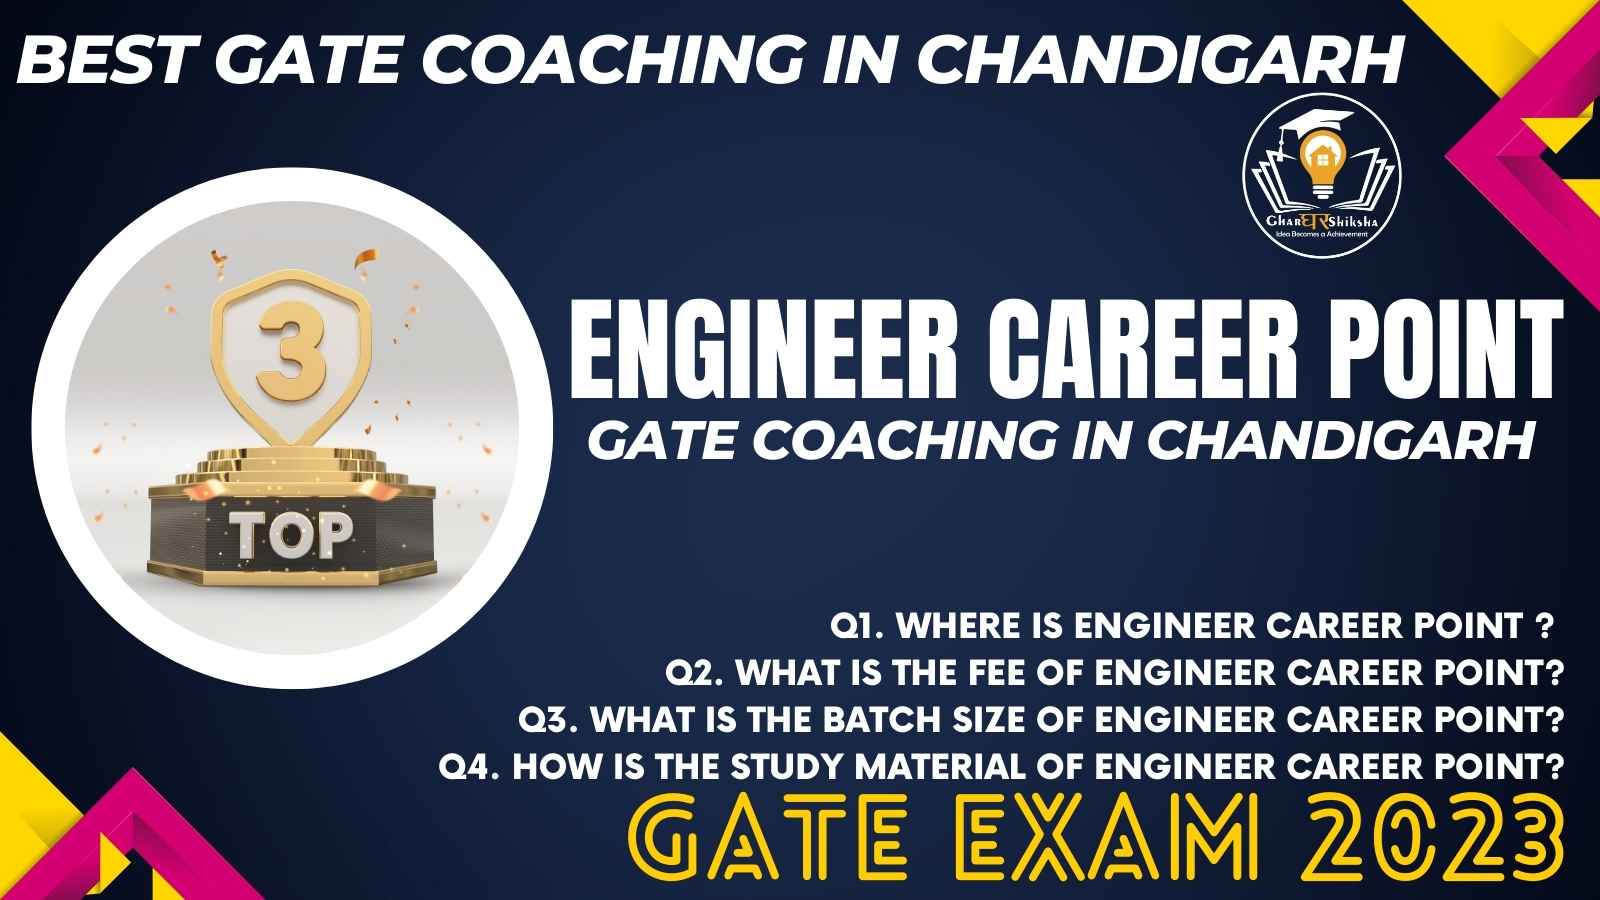 arh, Best GATE Coaching of Chandigarh,